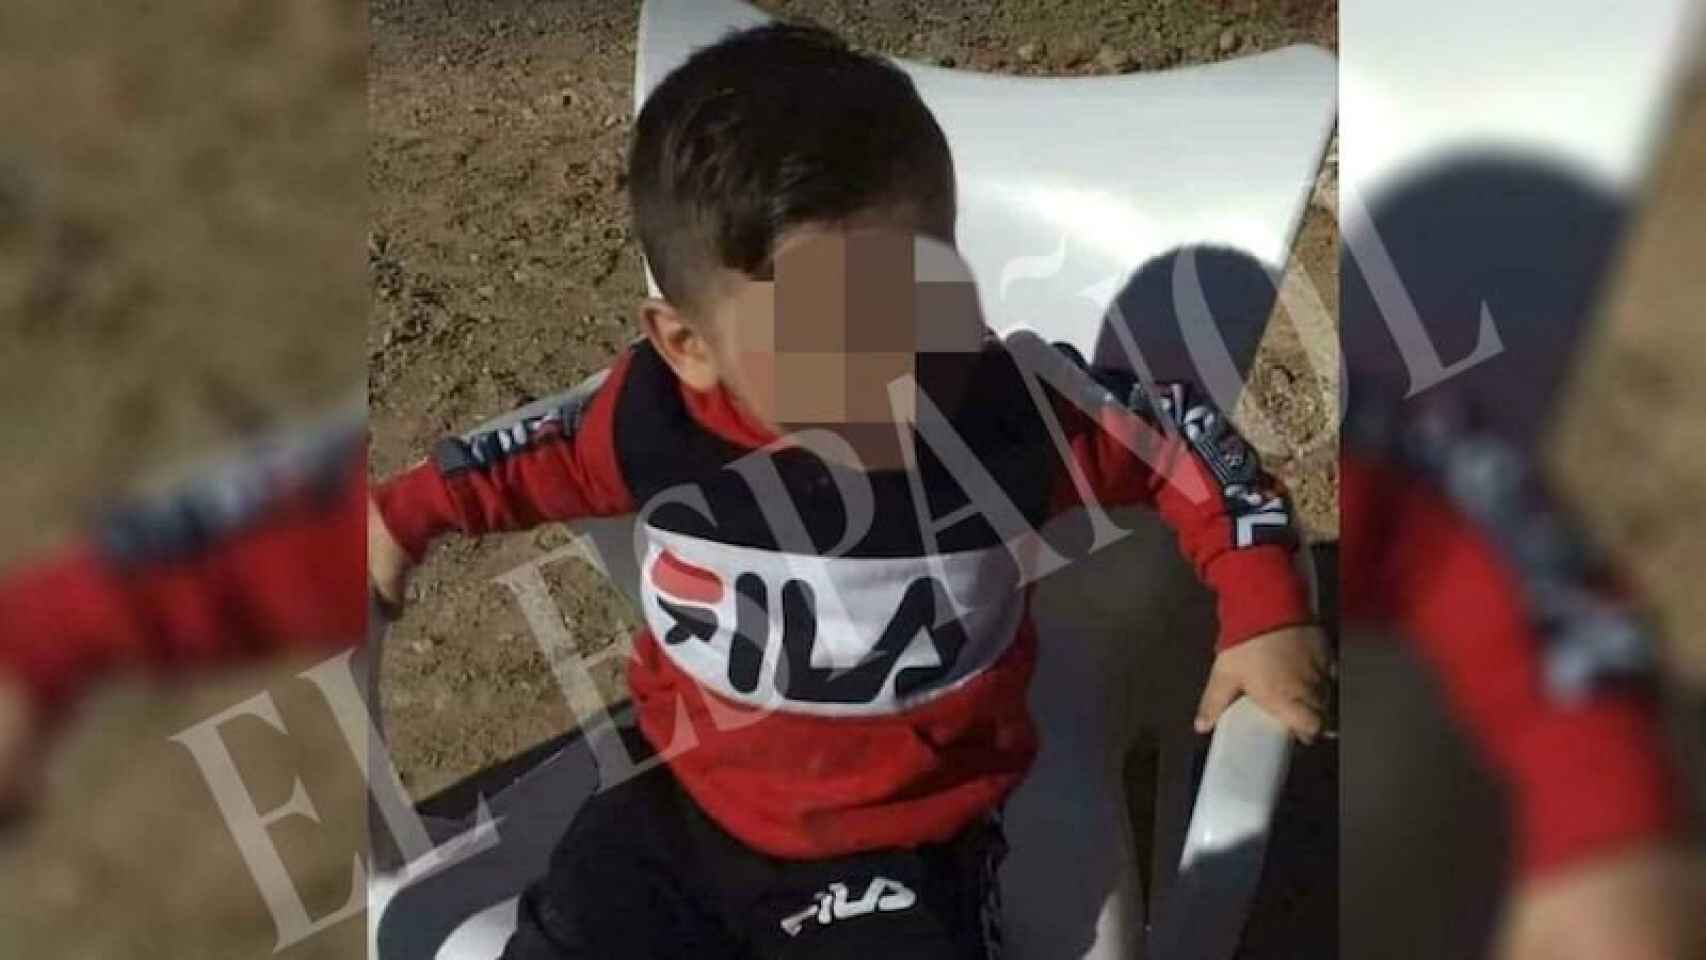 Julen Roselló, de dos años y medio, perdió la vida tras caer a un pozo en Totalán (Málaga) el 13 de enero de 2019. Las tareas de rescate se prolongaron durante 13 días.